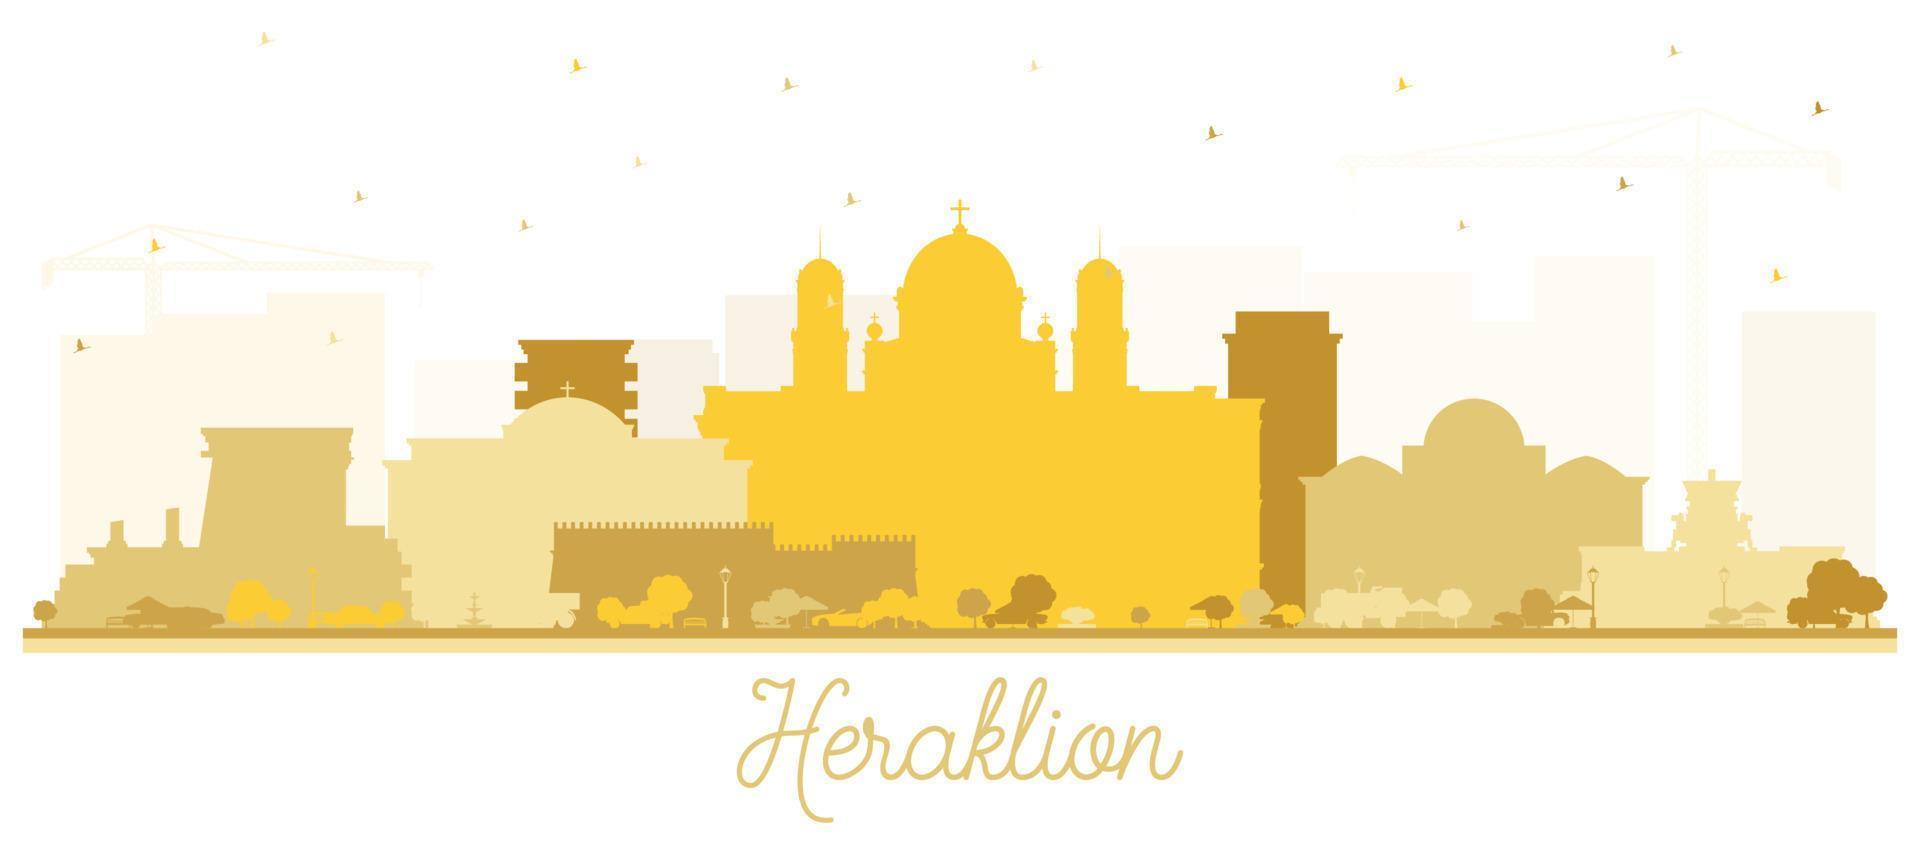 heraklion griechenland kreta stadt skyline silhouette mit goldenen gebäuden isoliert auf weiß. vektor